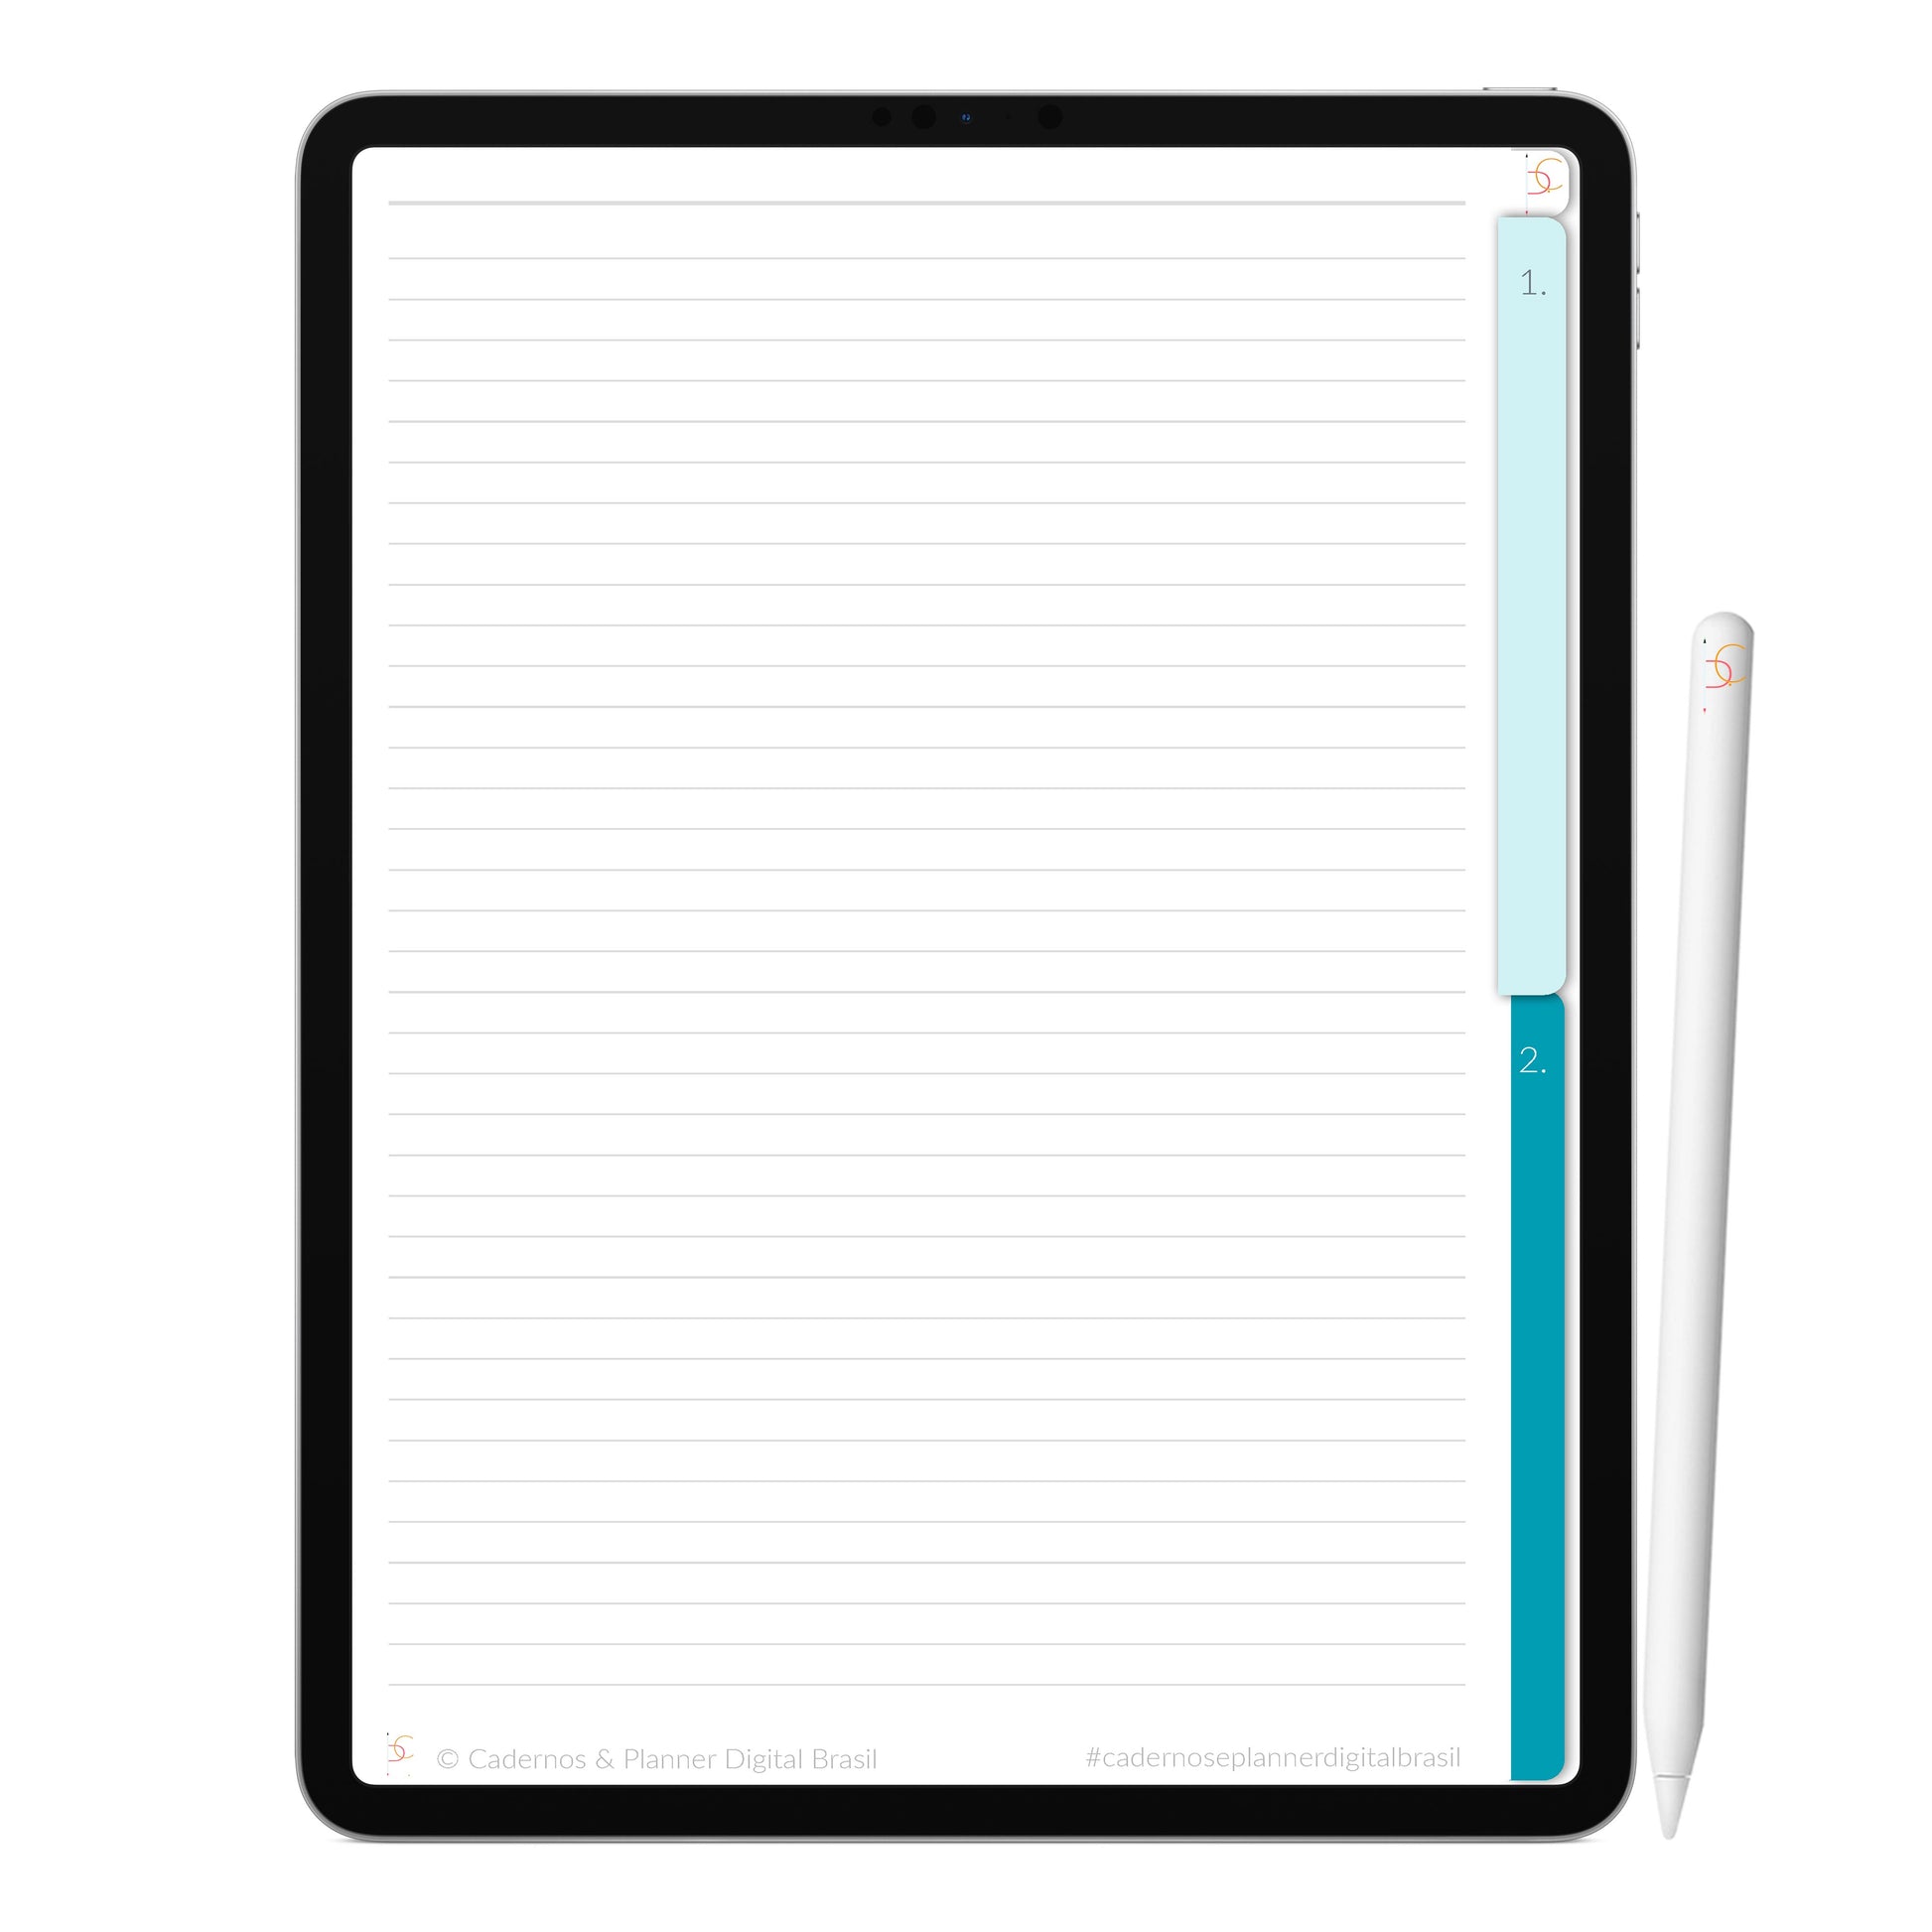 Caderno Digital Dreams Sonhos ' 2 Matérias Divisórias • Study • iPad Tablet • GoodNotes Noteshelf  • Download instantâneo